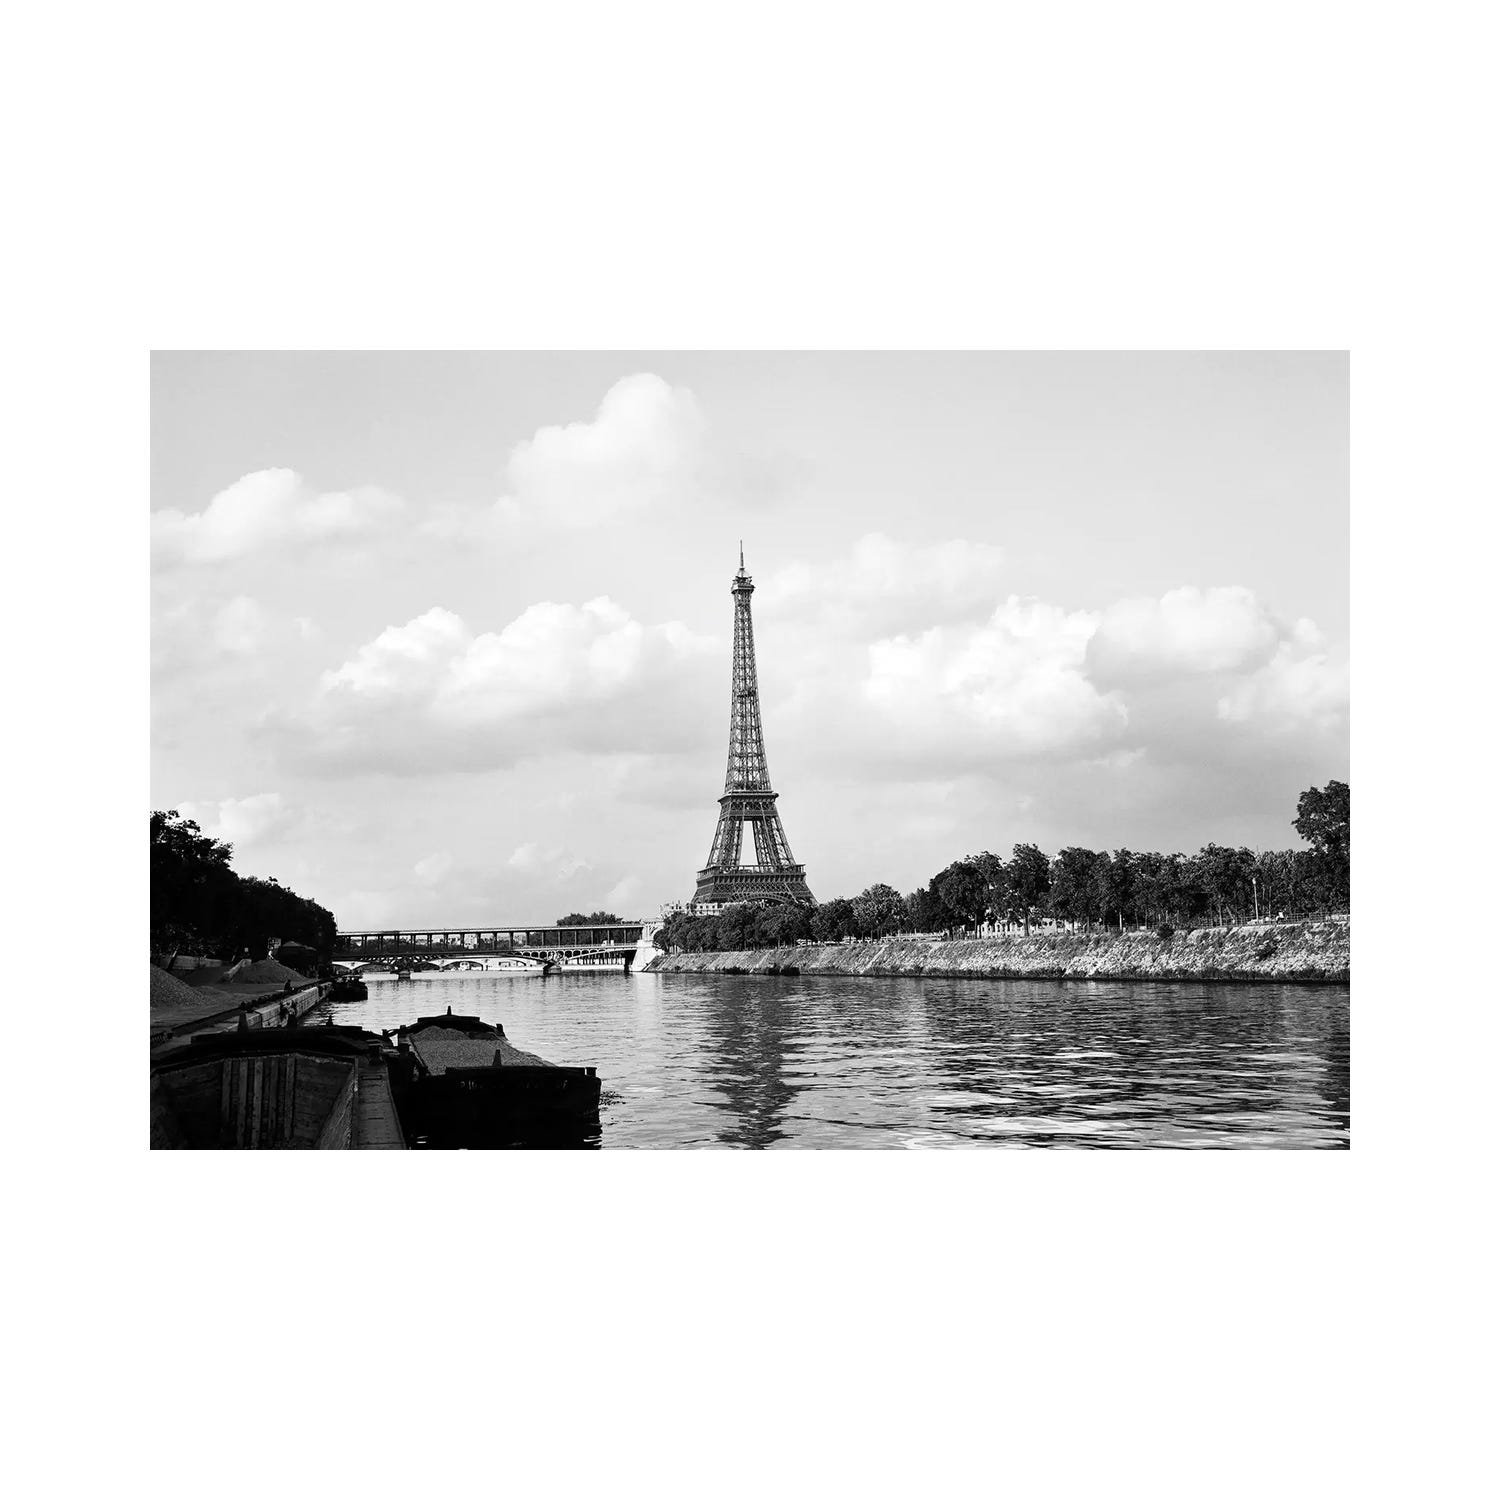 PARIS Eiffel Tower & River Seine, urban vintage style